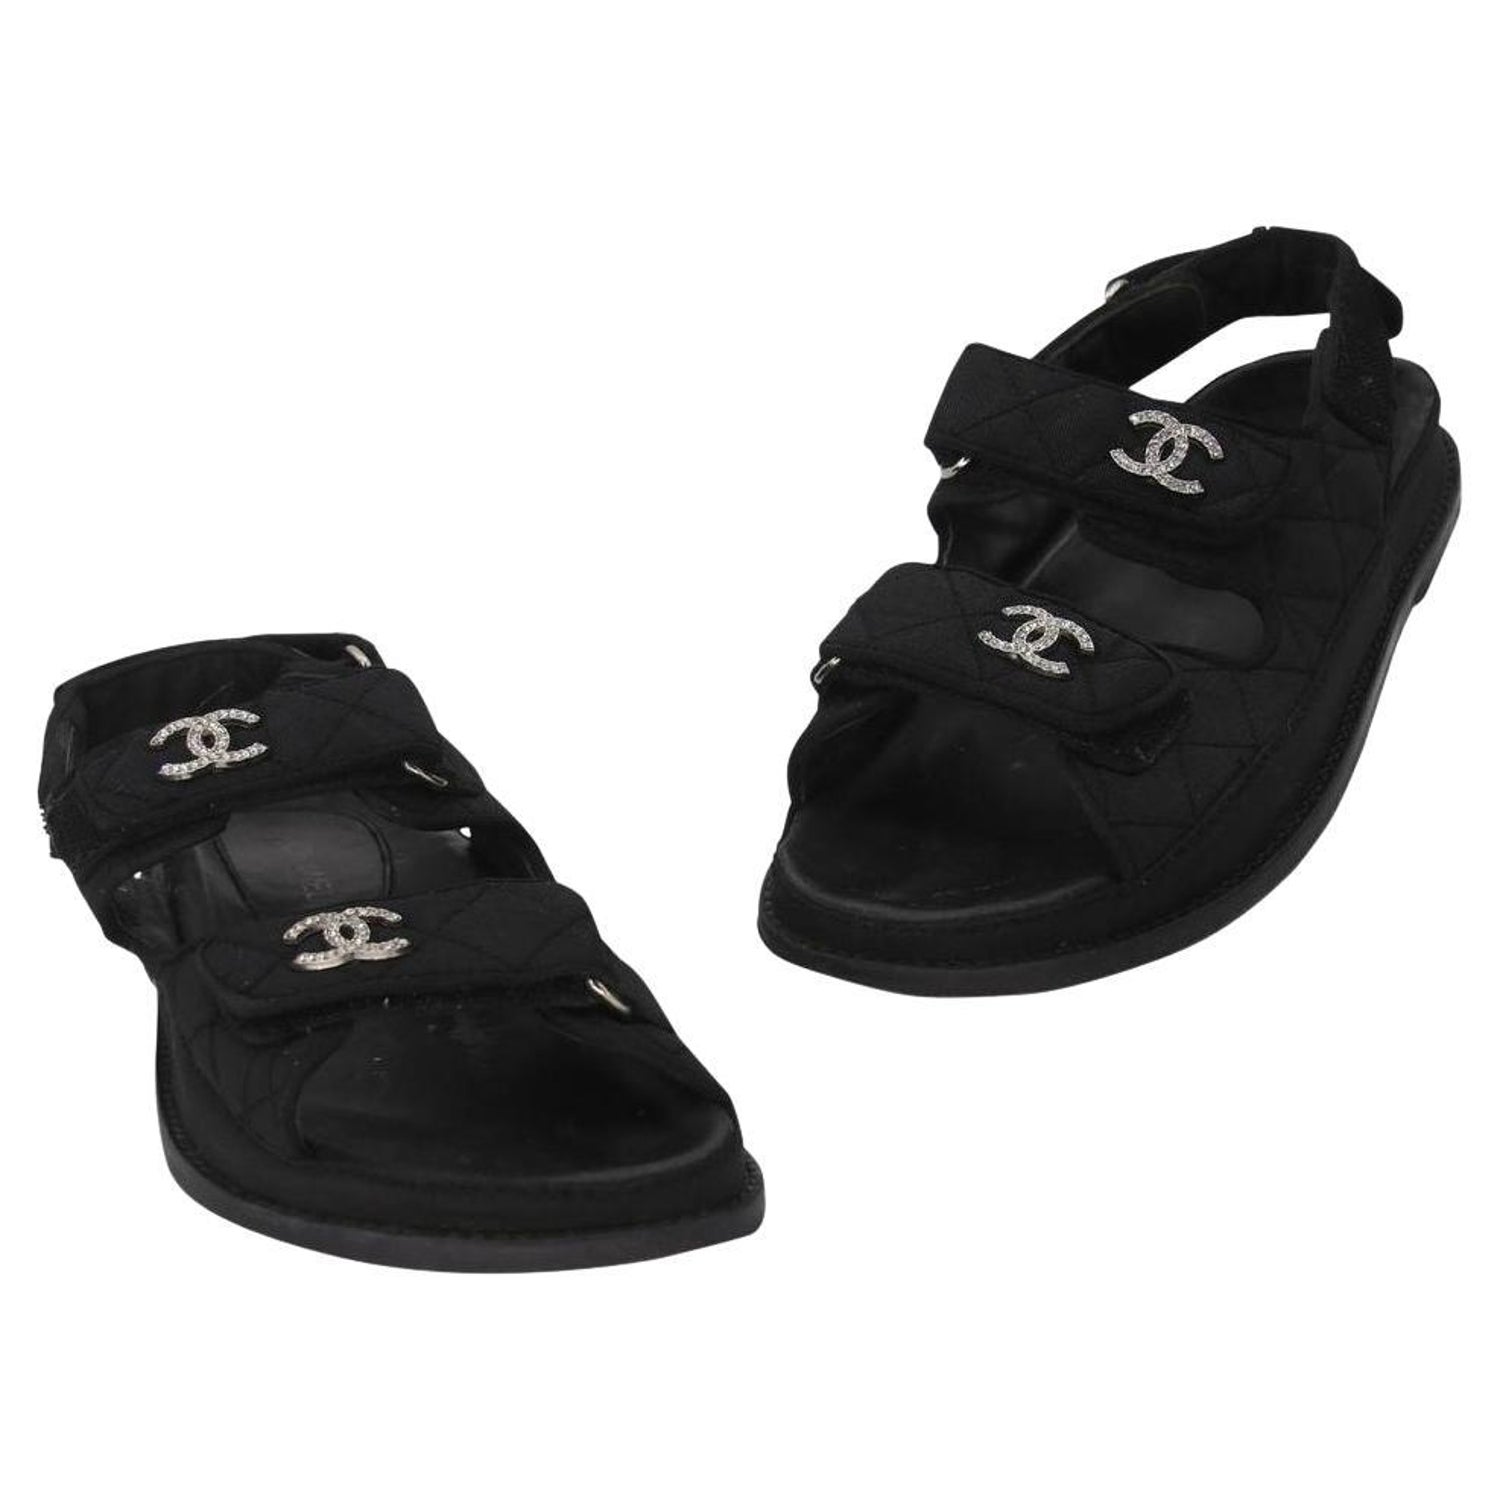 Chanel Dad Sandals Black - 5 For Sale on 1stDibs  chanel dad sandals  price, chanel sandals black, chanel dad sandals black and white